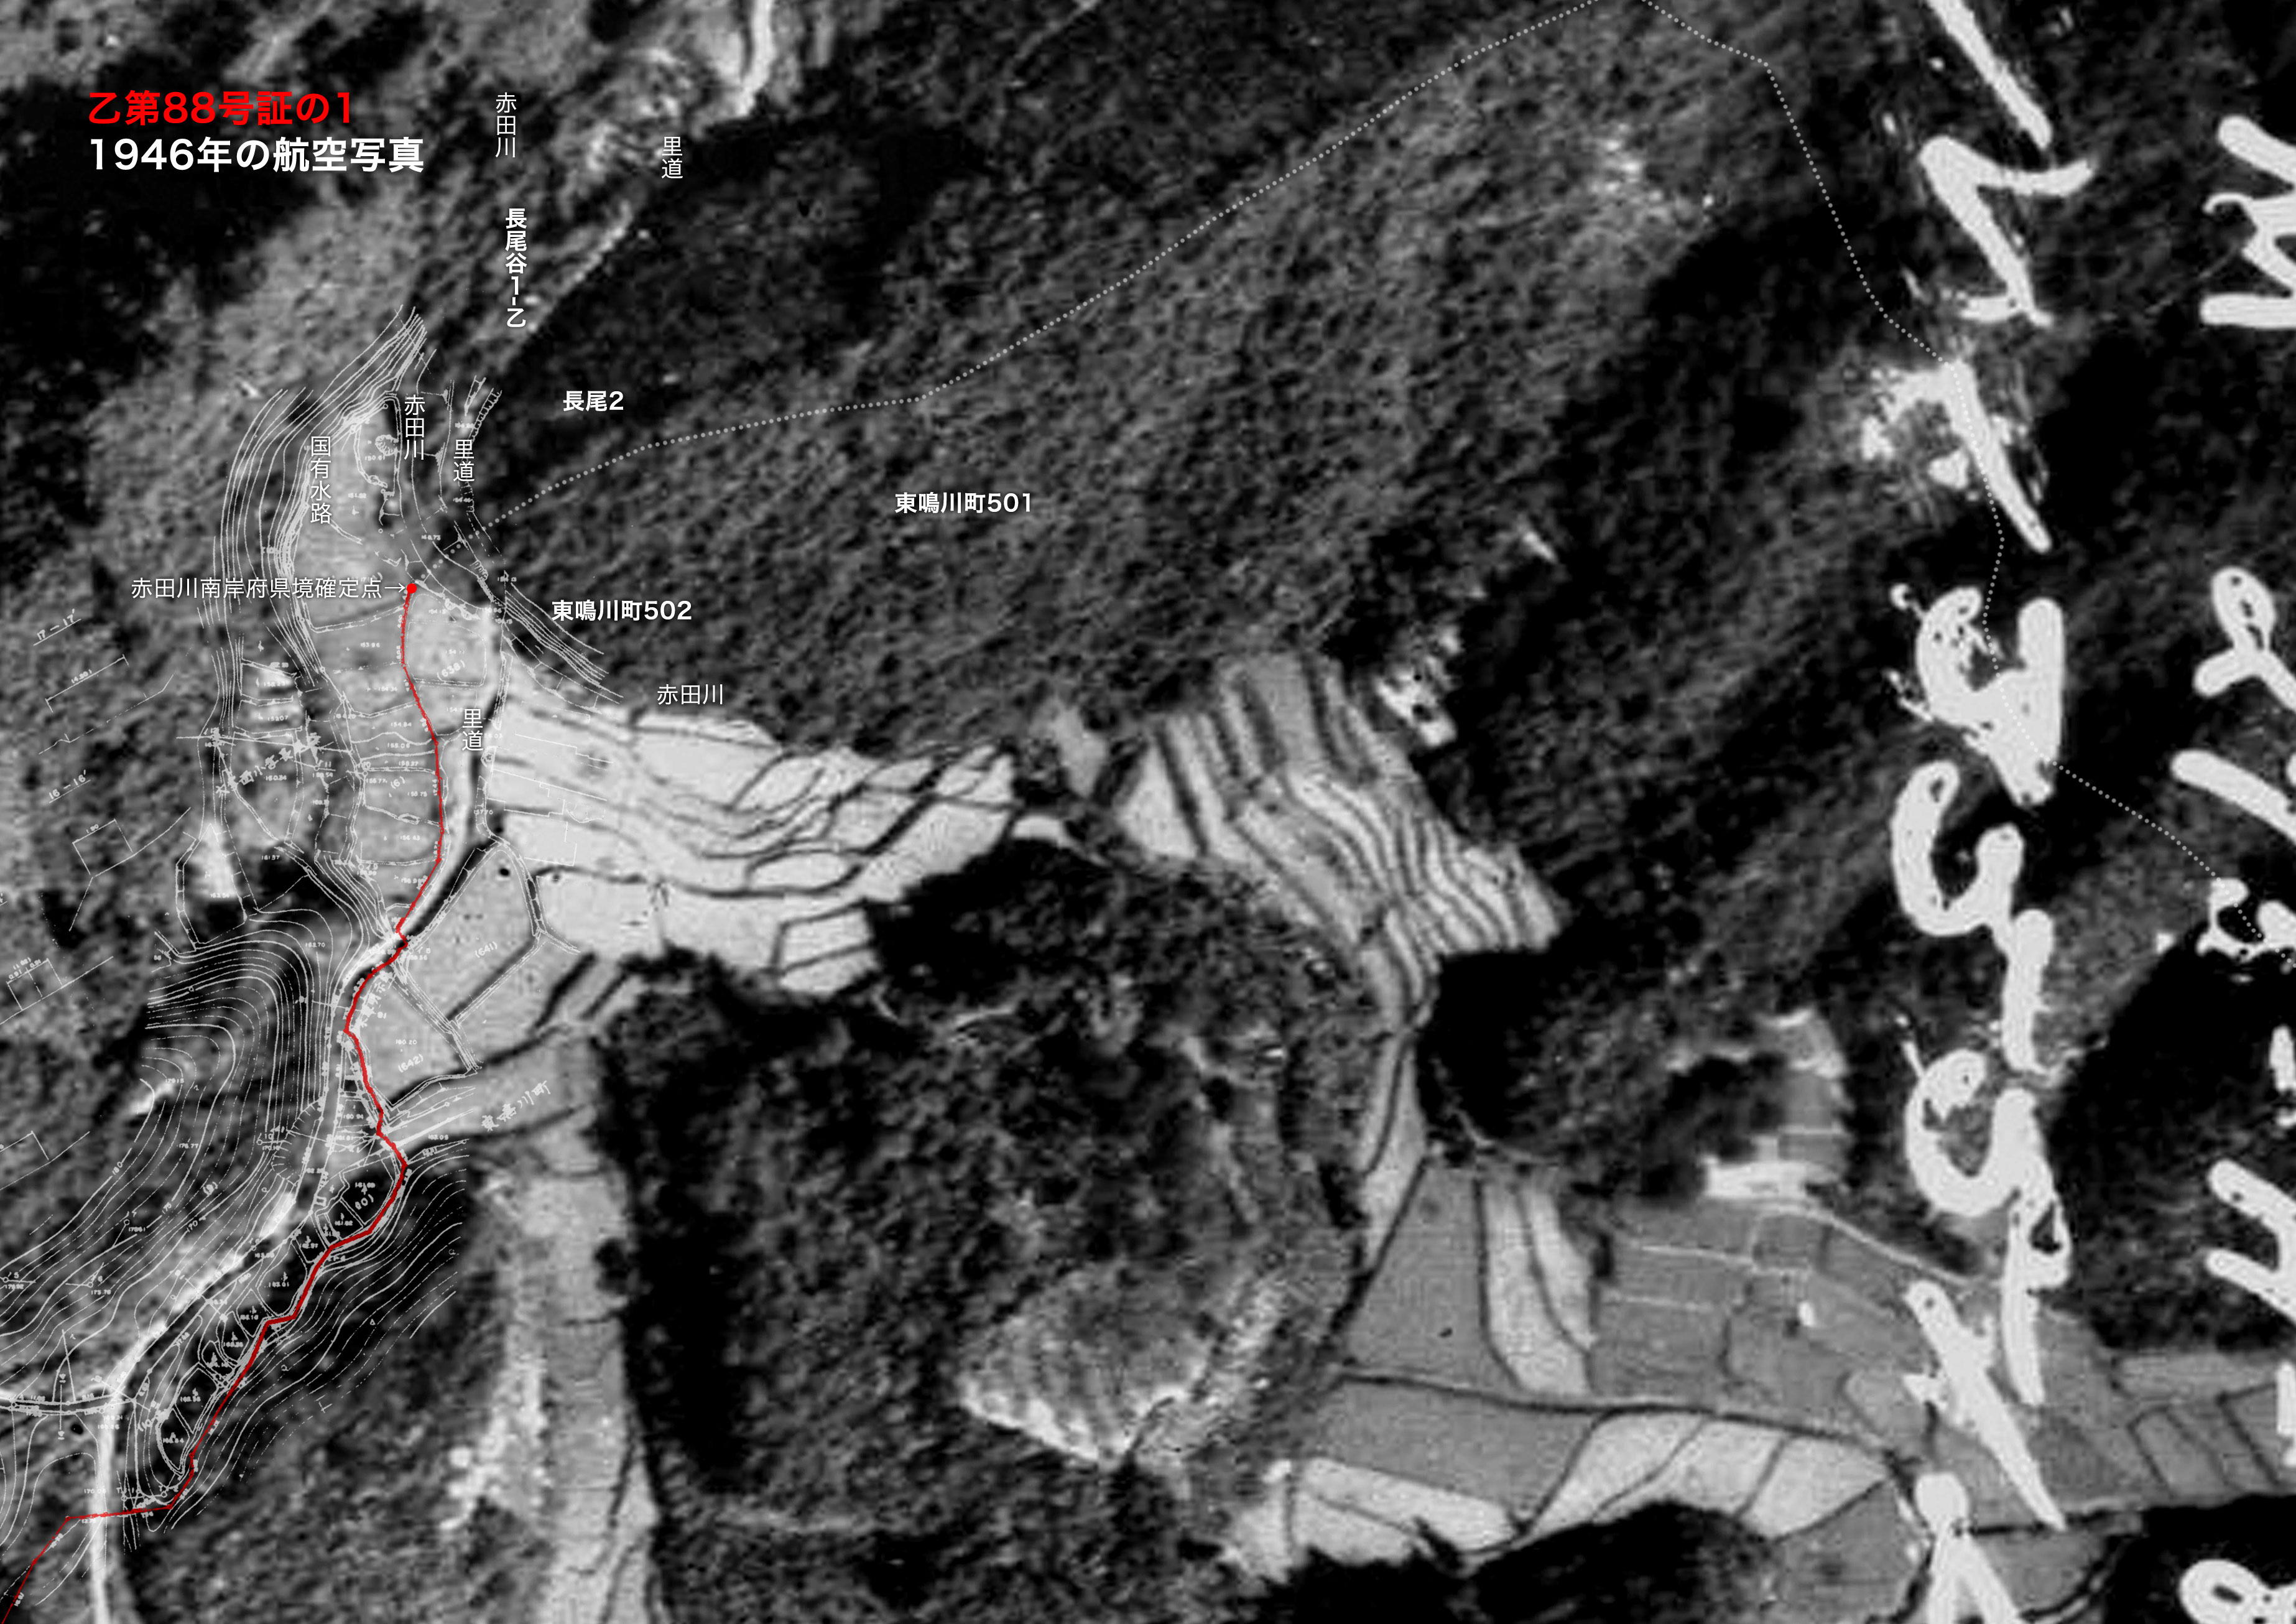 米軍が撮影した航空写真（国土地理院：コース番号Ｍ２７５−Ａ−８）に、本件地内平面図を重ね合わせた合成図